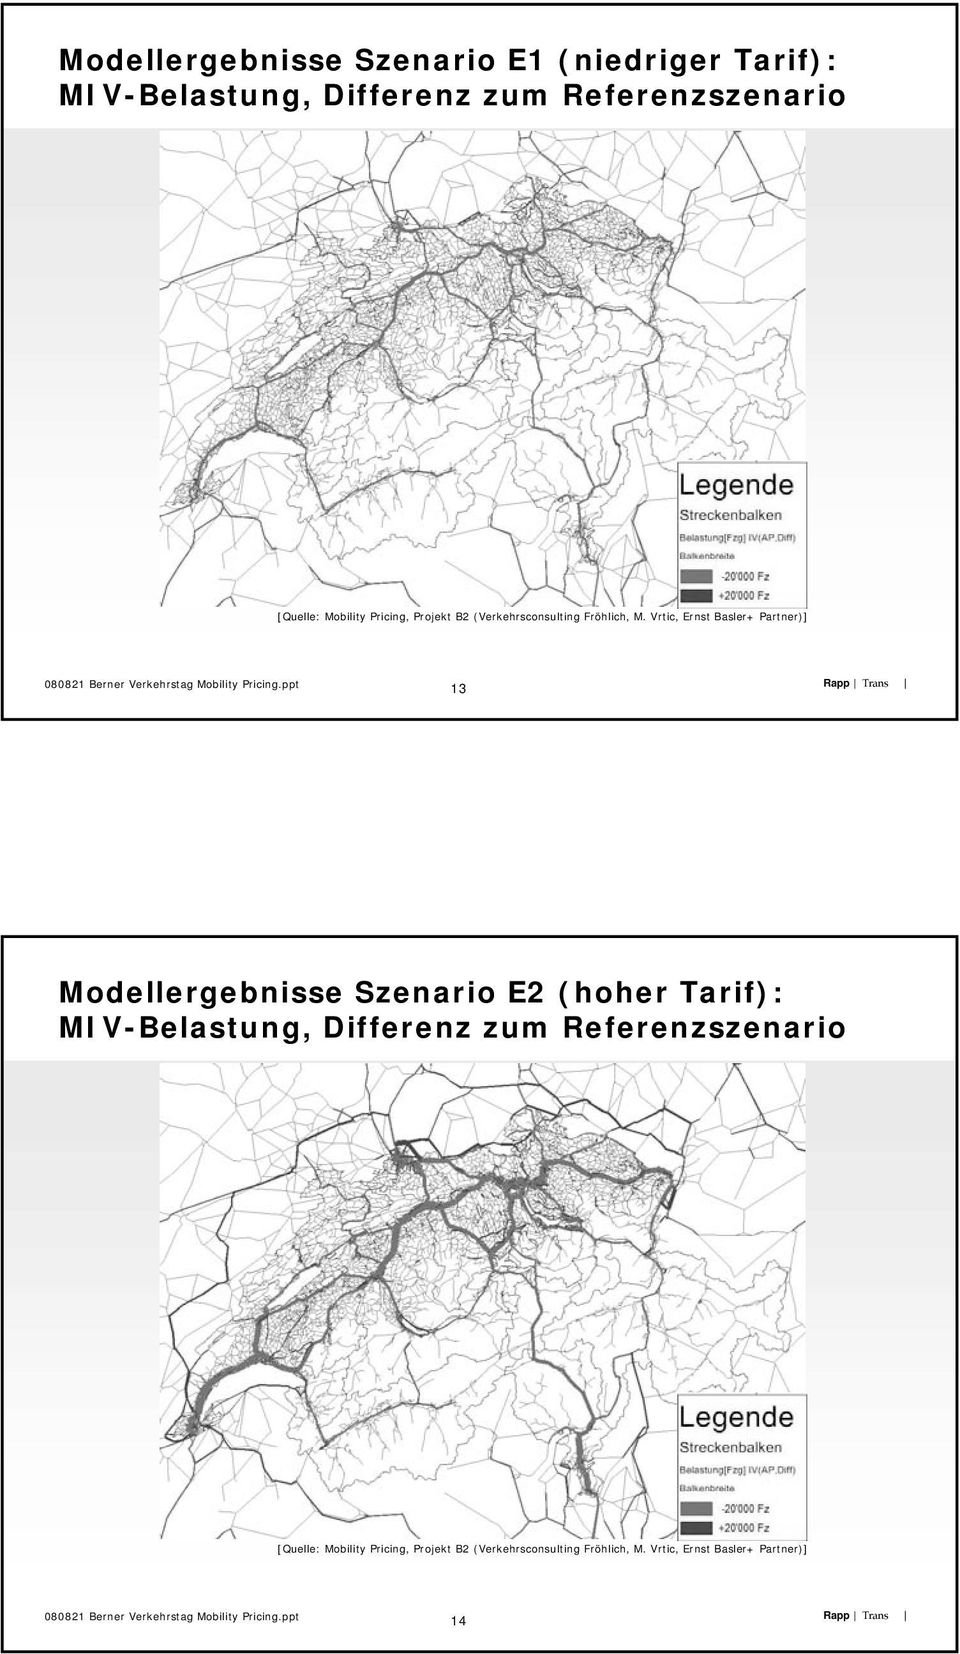 Vrtic, Ernst Basler+ Partner)] 13 Modellergebnisse Szenario E2 (hoher Tarif): MIV-Belastung,